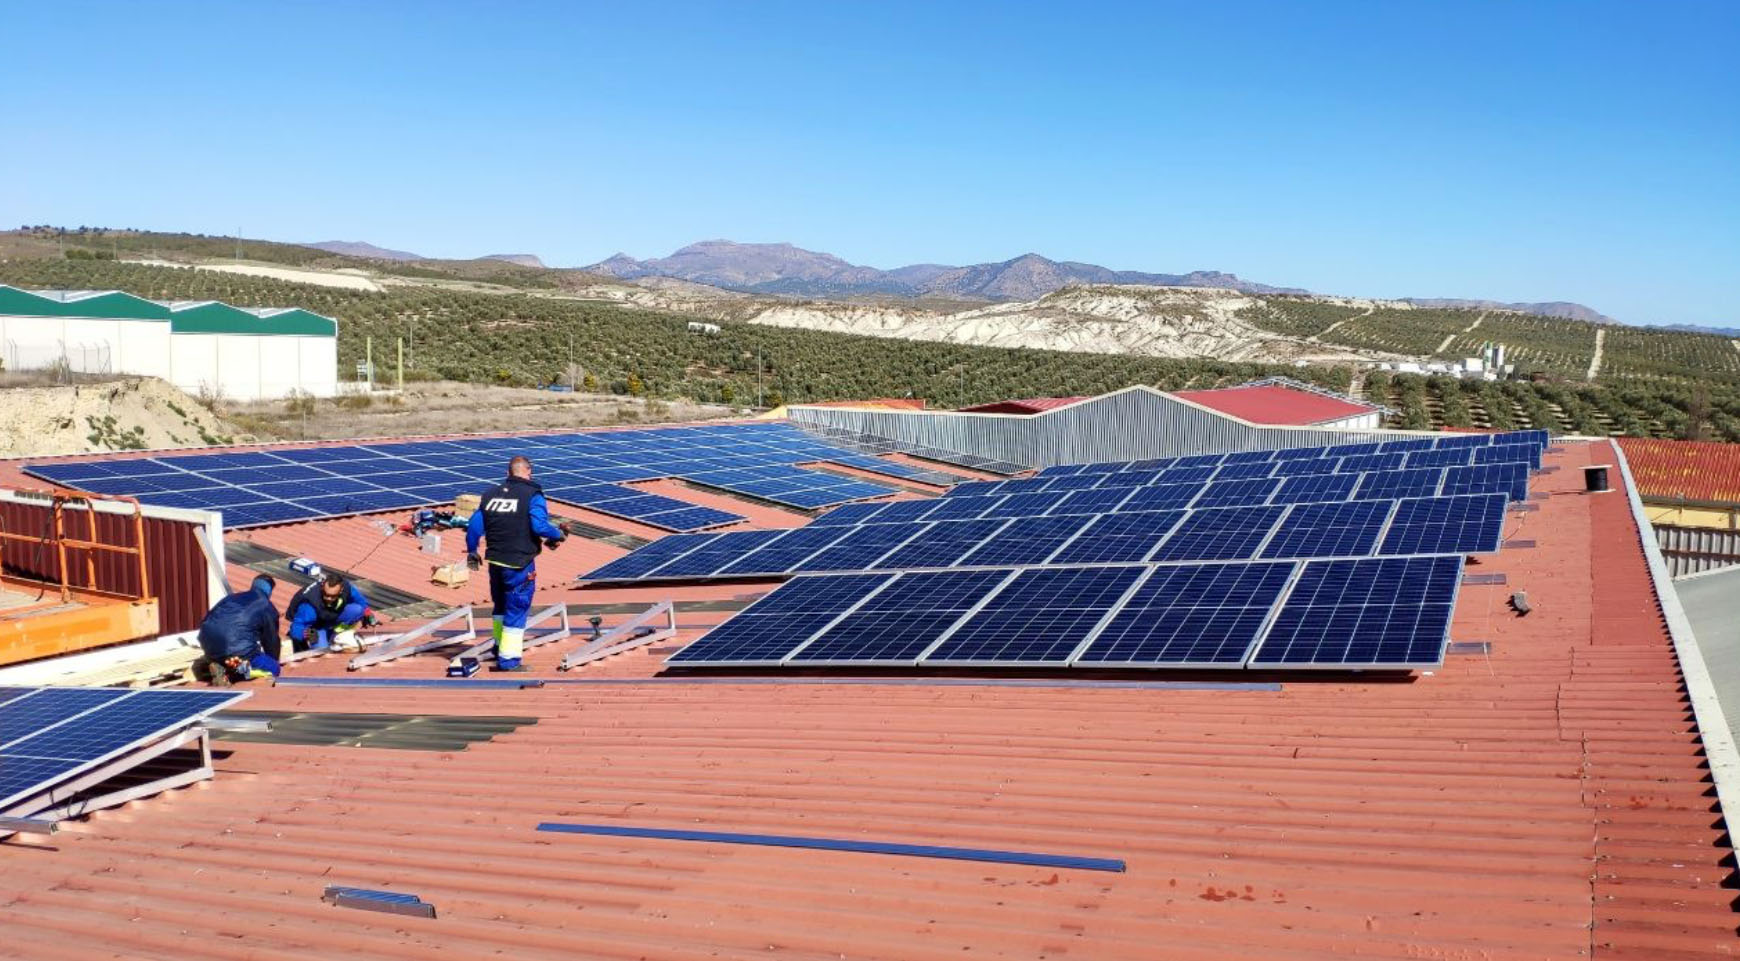 Instalacin fotovoltaica para autoconsumo industrial de 70 kWp realizada en Sern por Automatismos ITEA